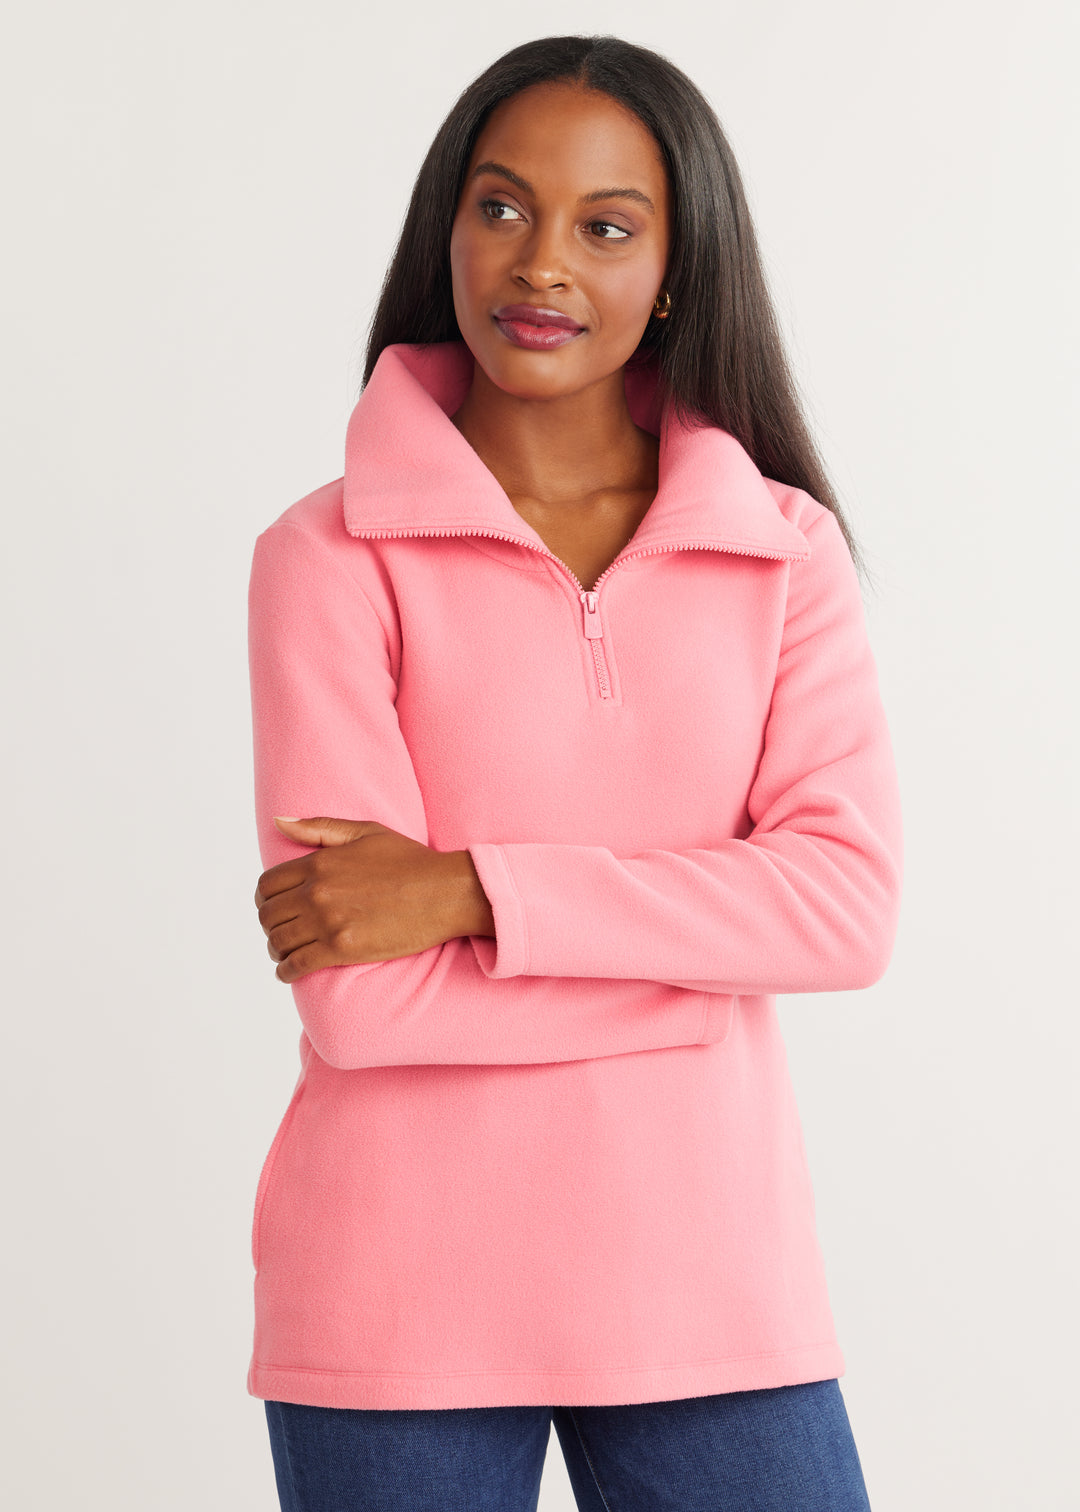 Prospect Pullover in Vello Fleece (Pink Lemonade)